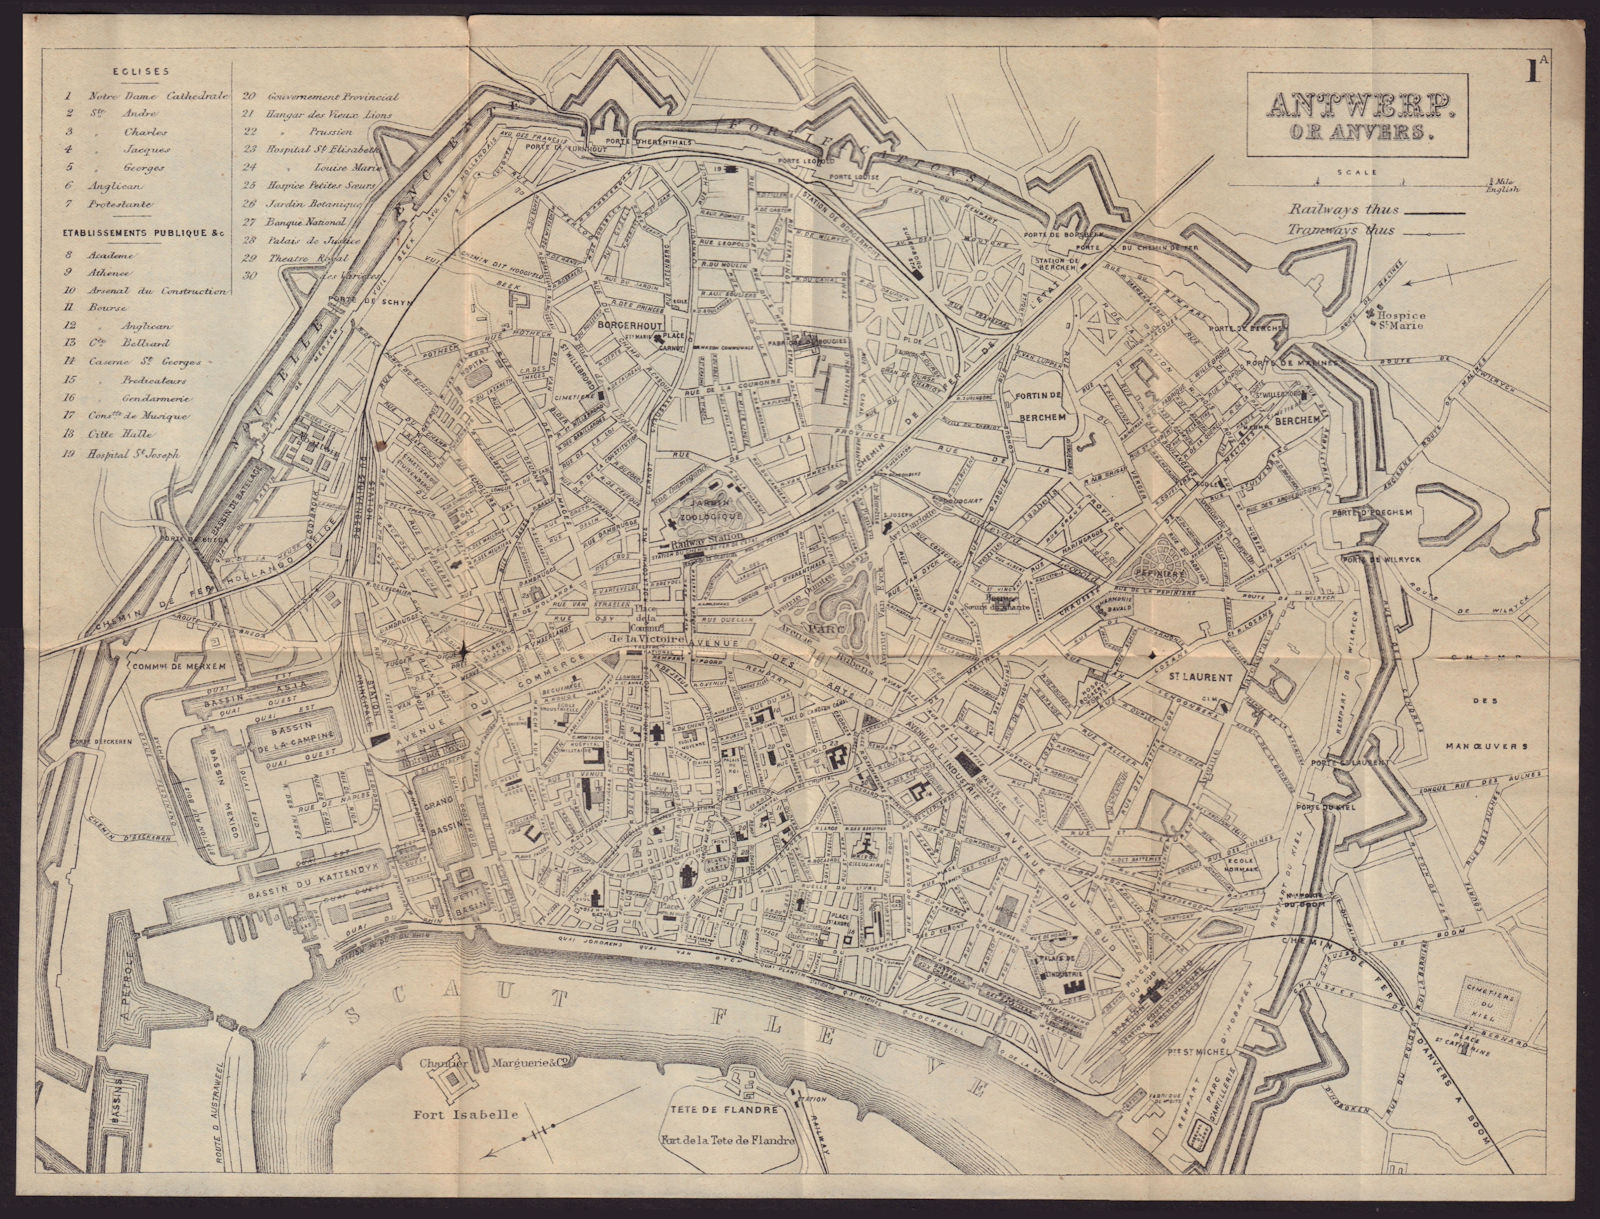 ANTWERP ANVERS ANTWERPEN antique town plan city map. Belgium. BRADSHAW 1892